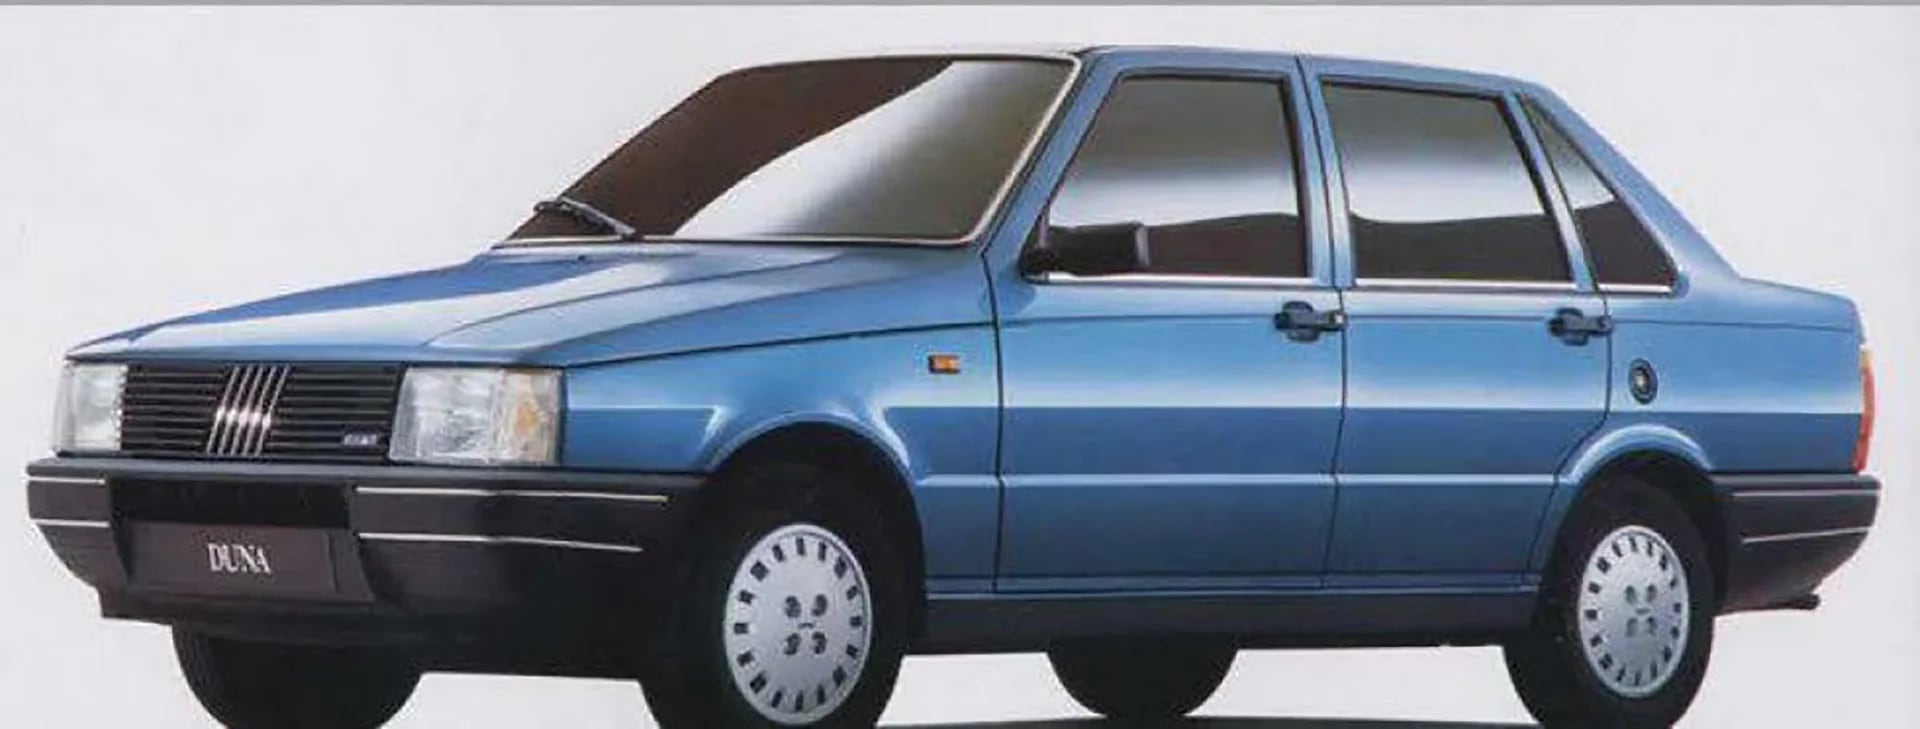 El Fiat Duna, uno de los modelos más fuertes de los 90 en la Argentina, fue diseñado por Giugiaro para el mercado sudamericano.